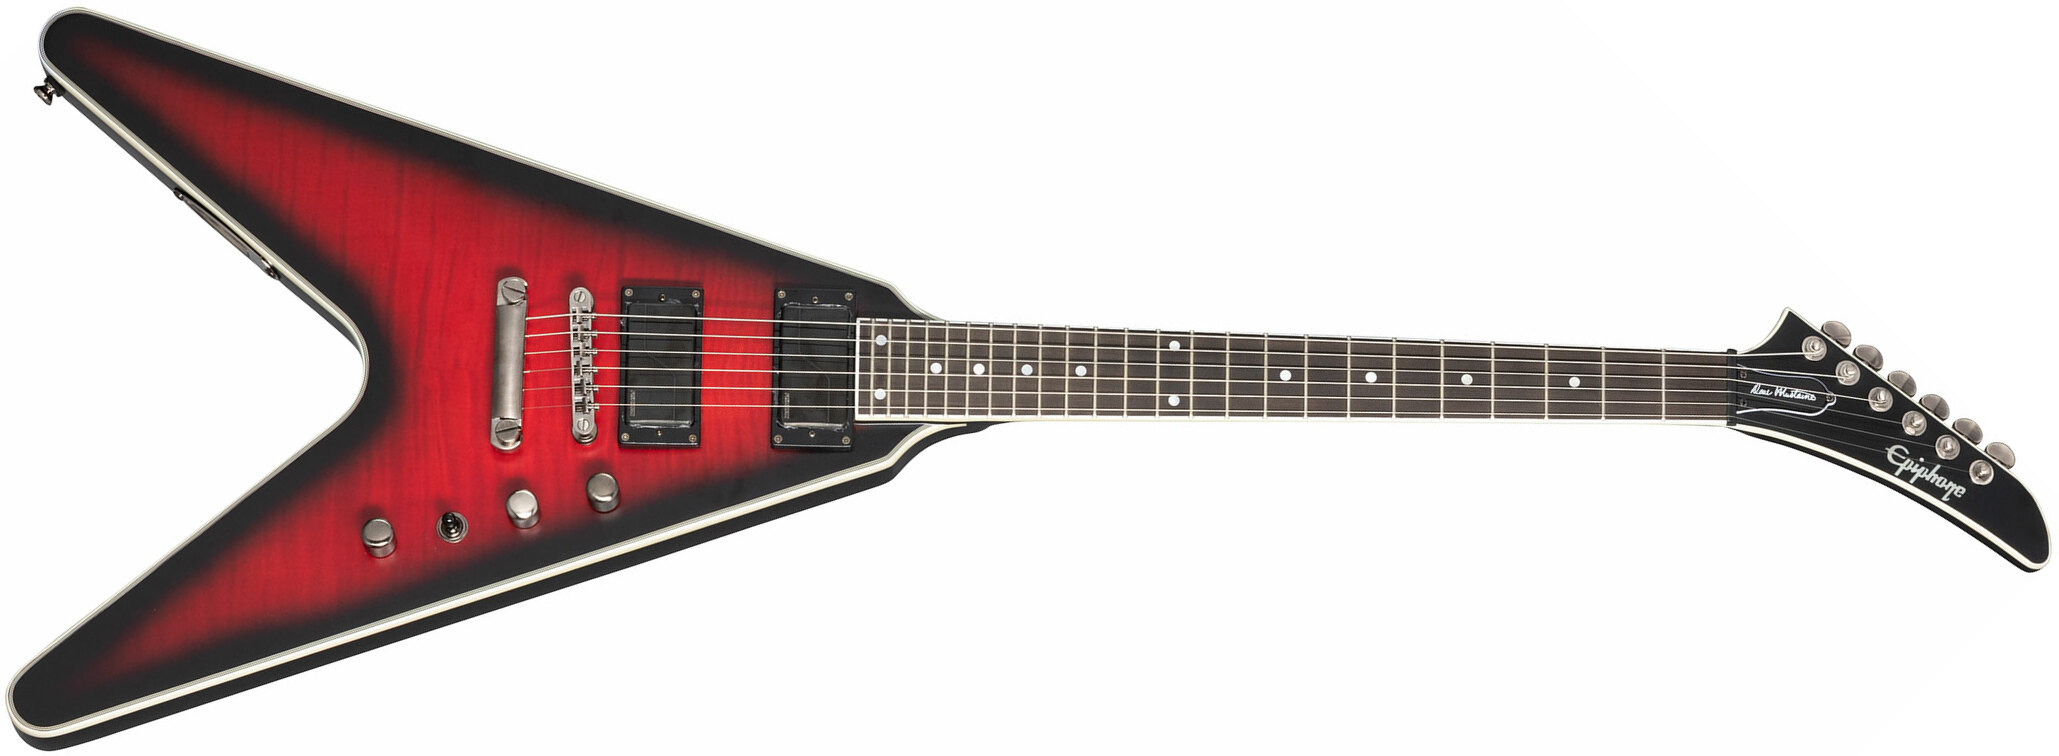 Epiphone Dave Mustaine Flying V Prophecy 2h Fishman Fluence Ht Eb - Aged Dark Red Burst - Metalen elektrische gitaar - Main picture